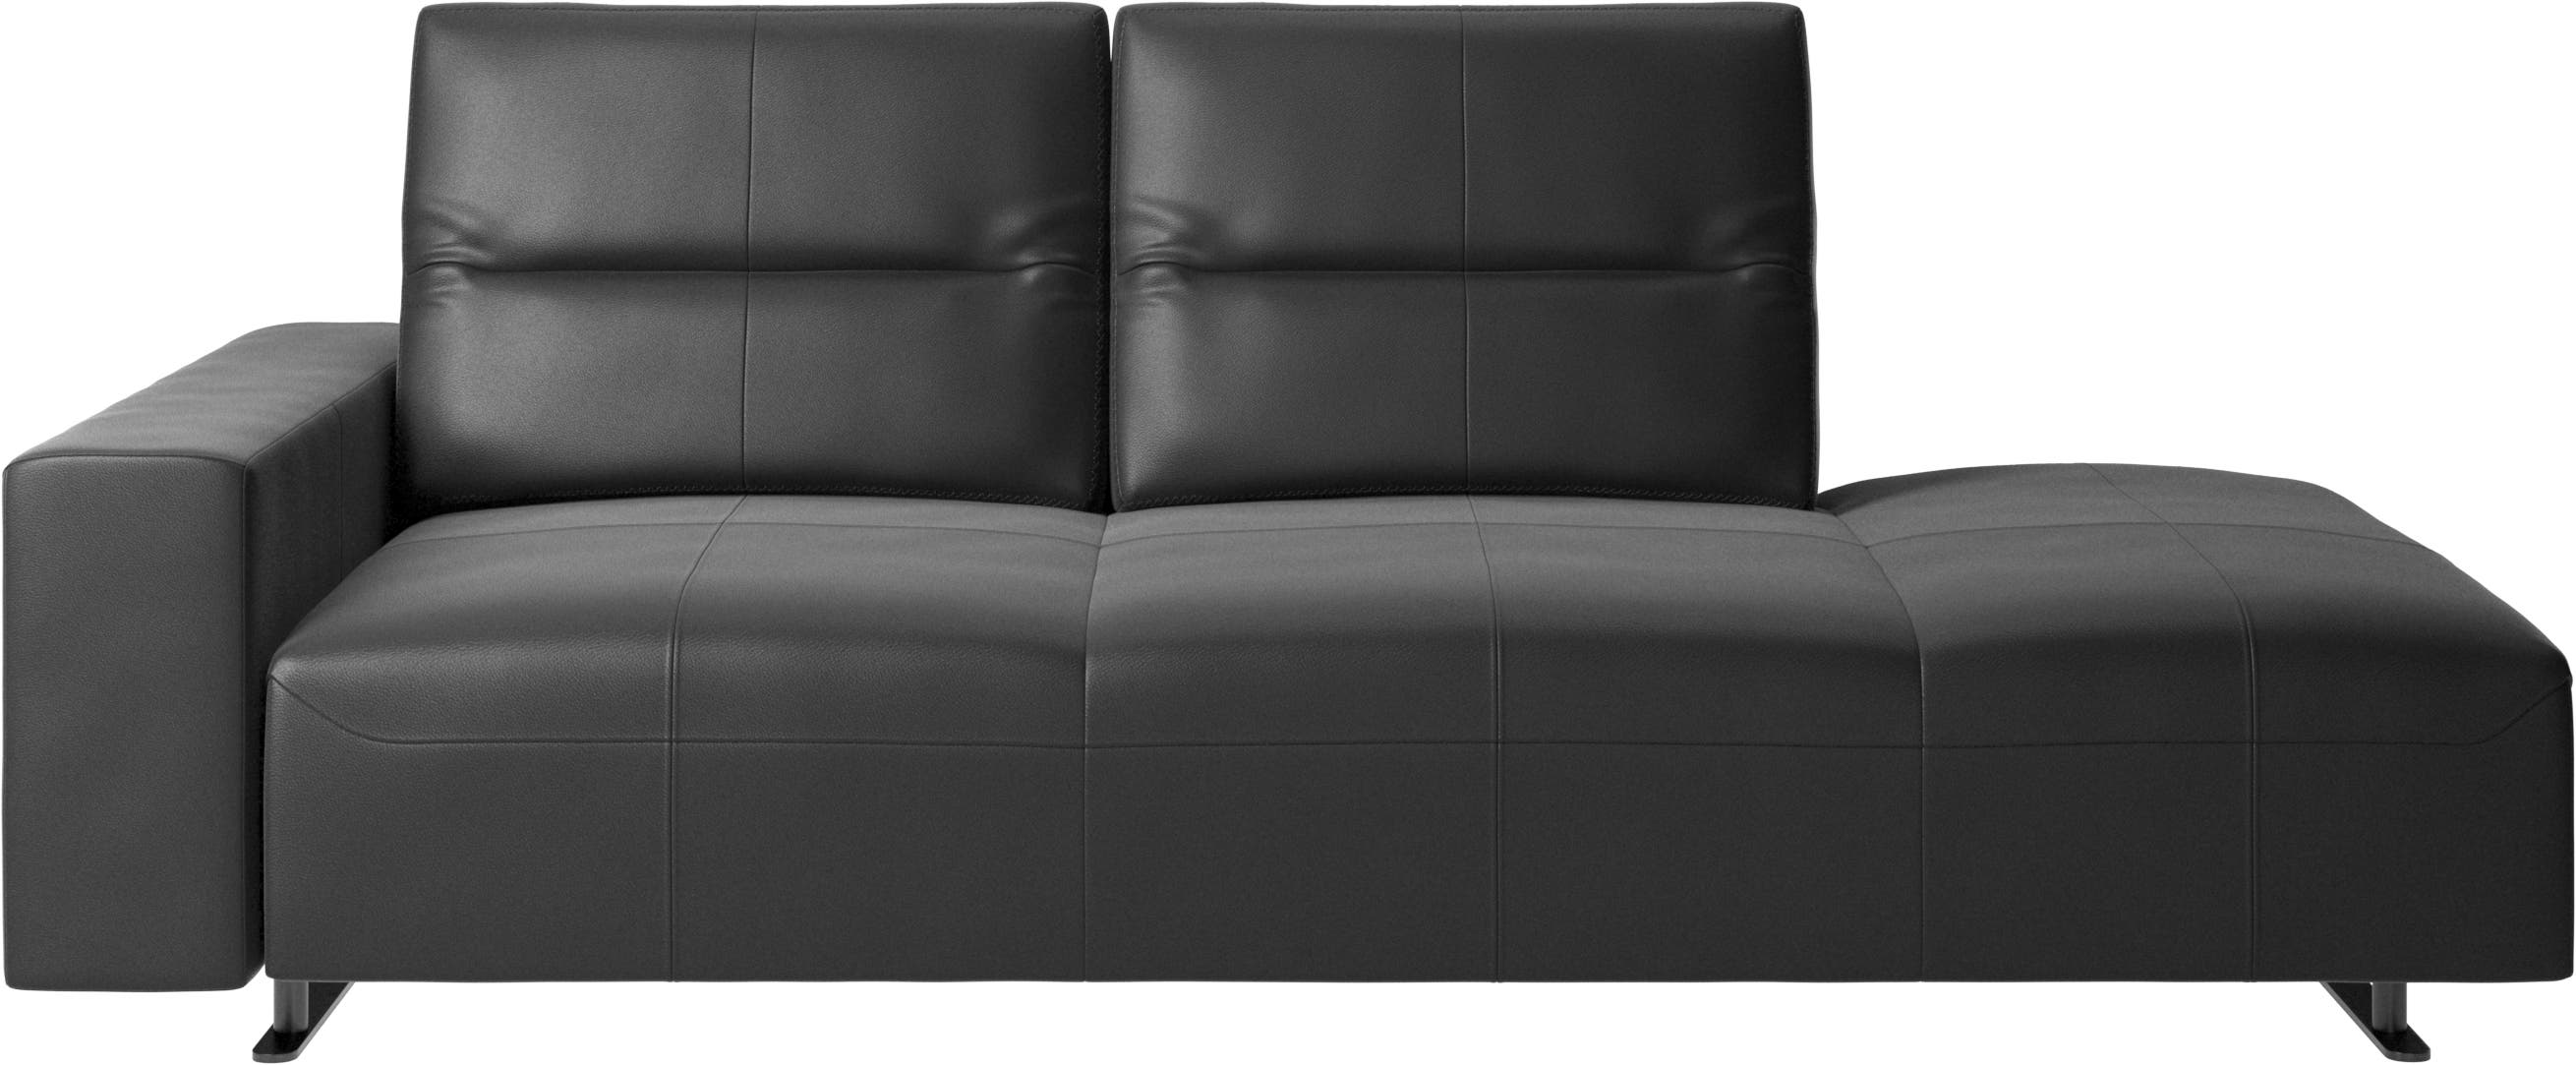 Canapé Hampton avec dossier ajustable et chaise longue, rangement et accoudoir côté gauche